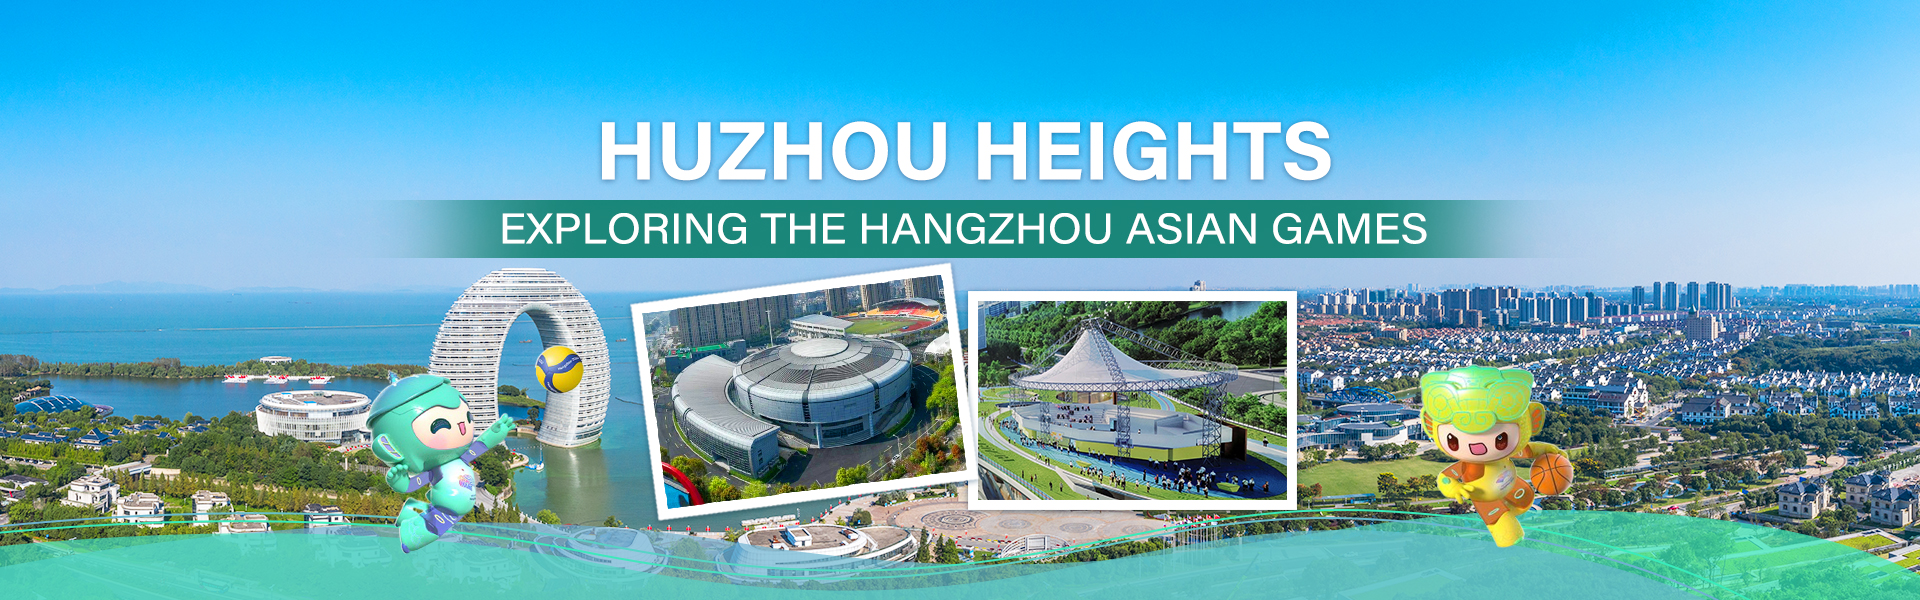 Huzhou Heights: Exploring the Hangzhou Asian Games